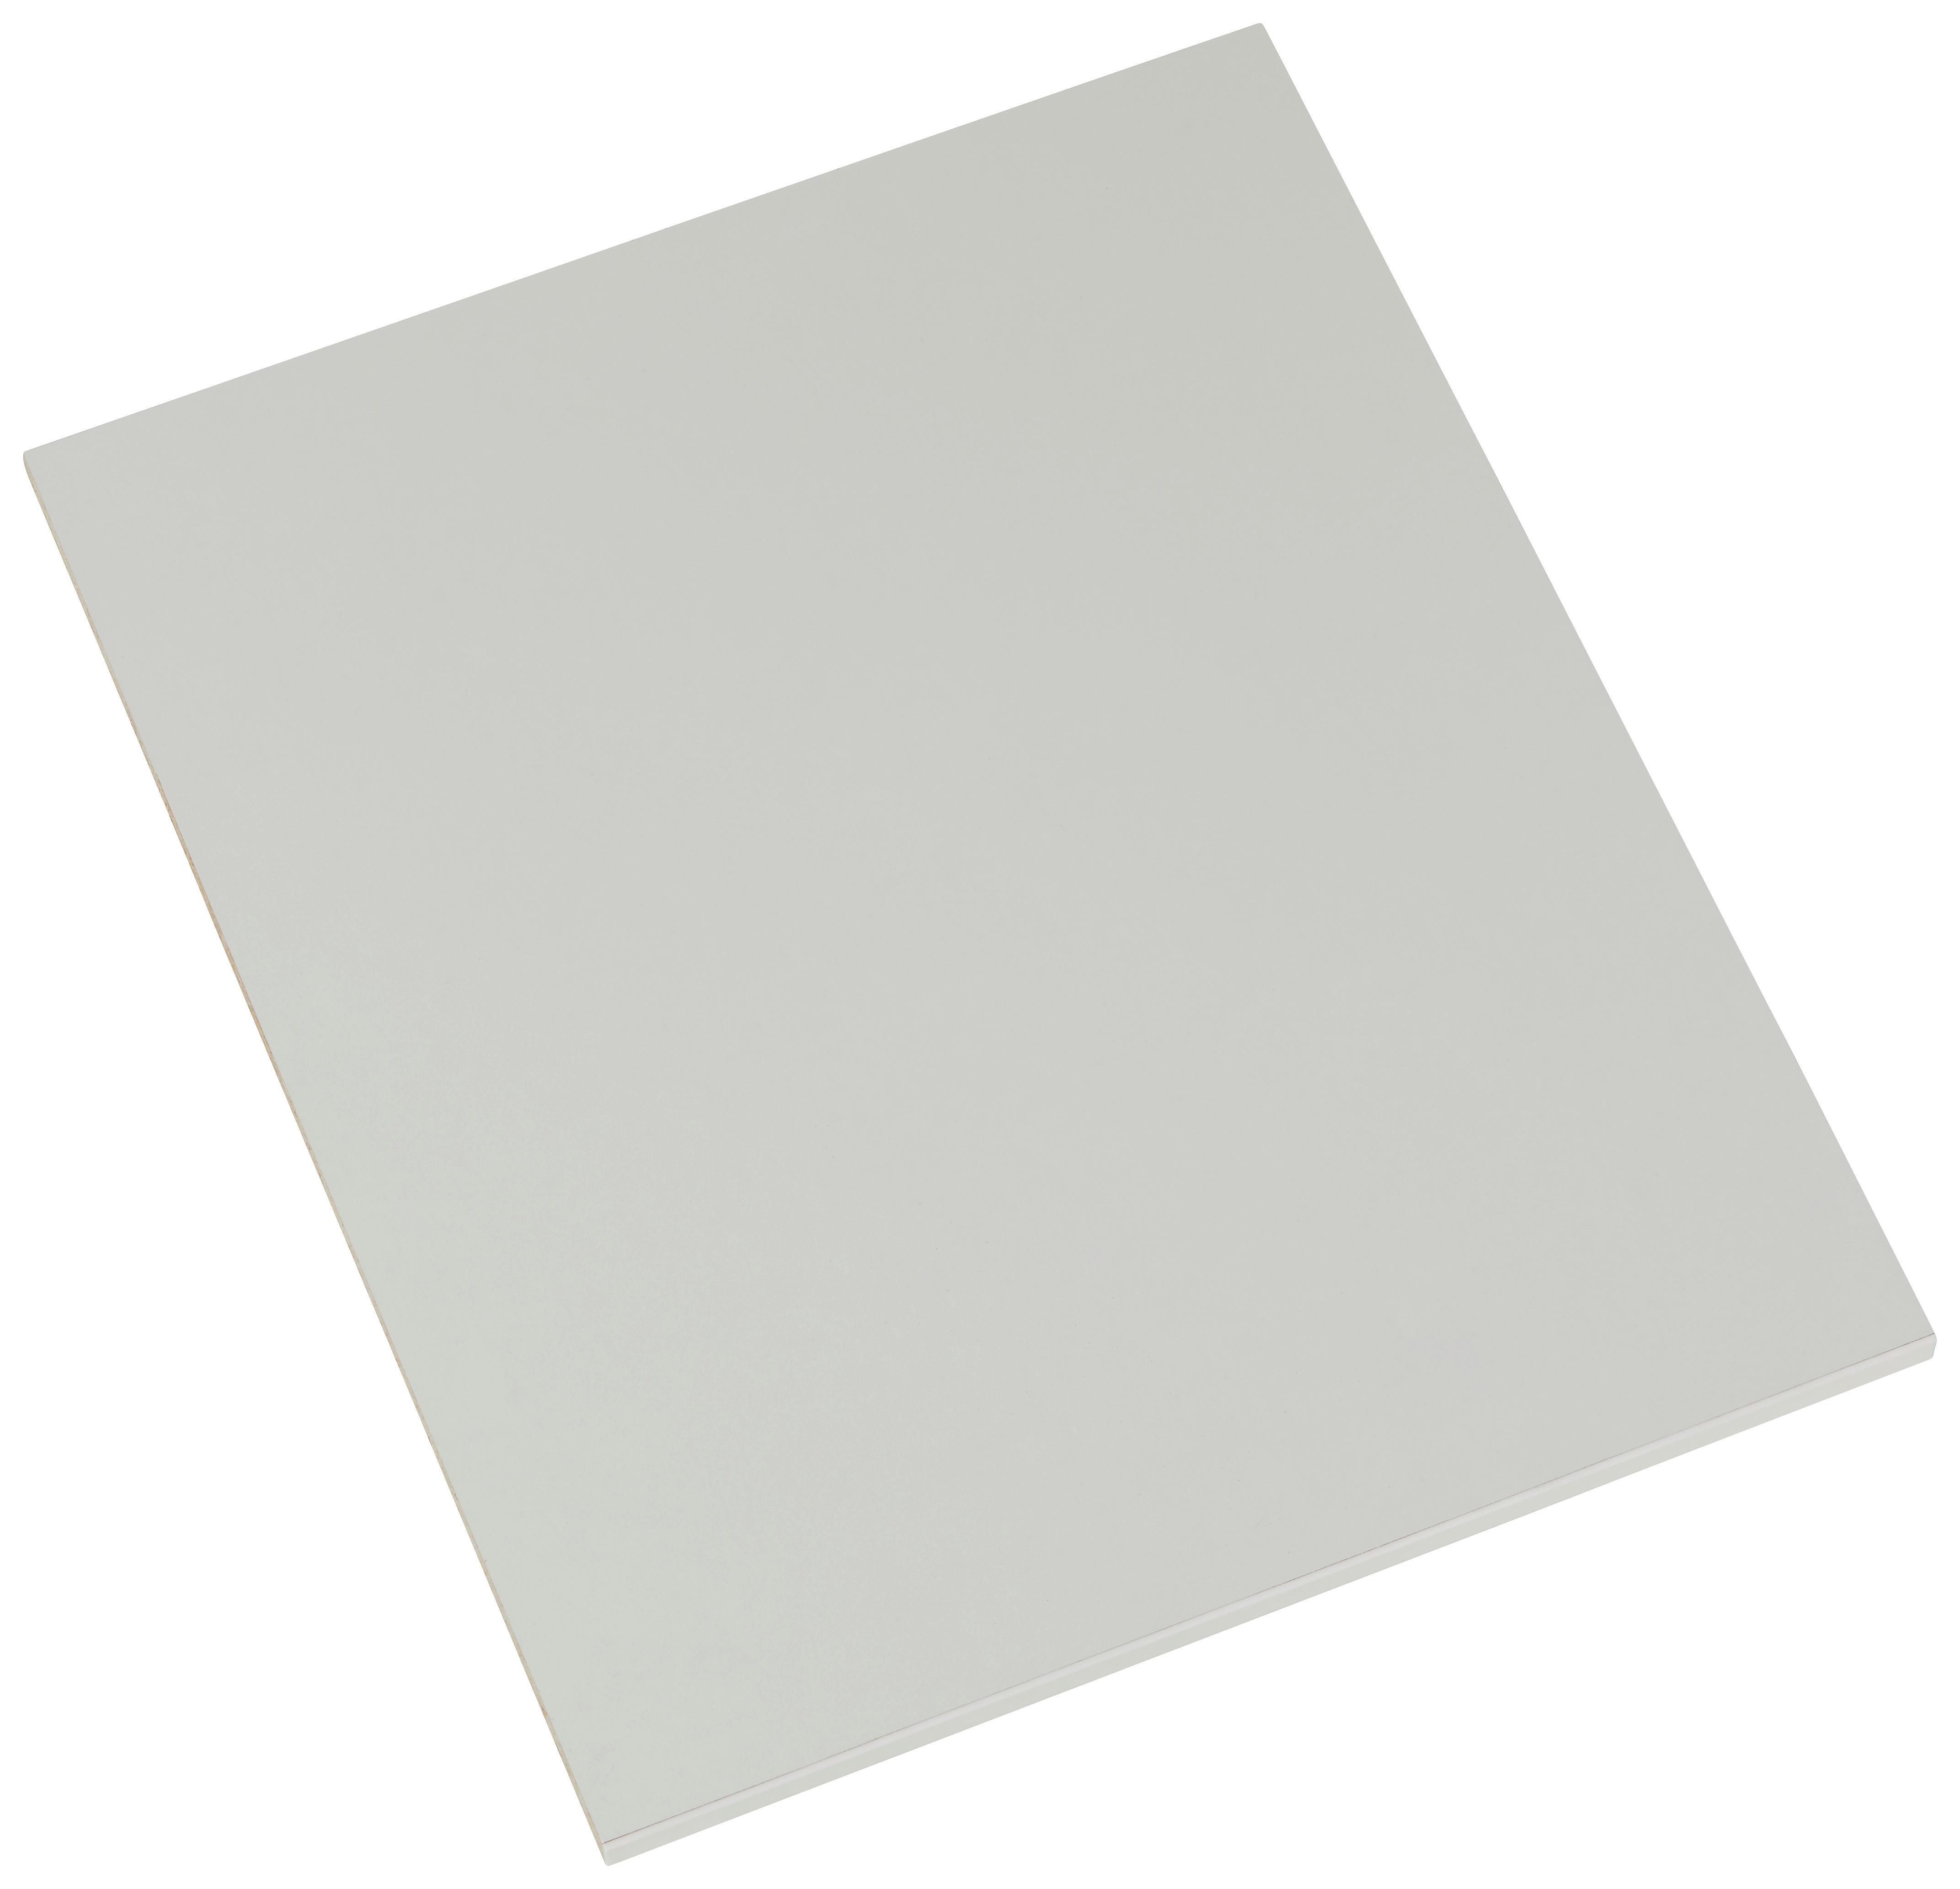 Einlegeboden in Weiß - Weiß, ROMANTIK / LANDHAUS, Holzwerkstoff (94/2/56cm) - Based